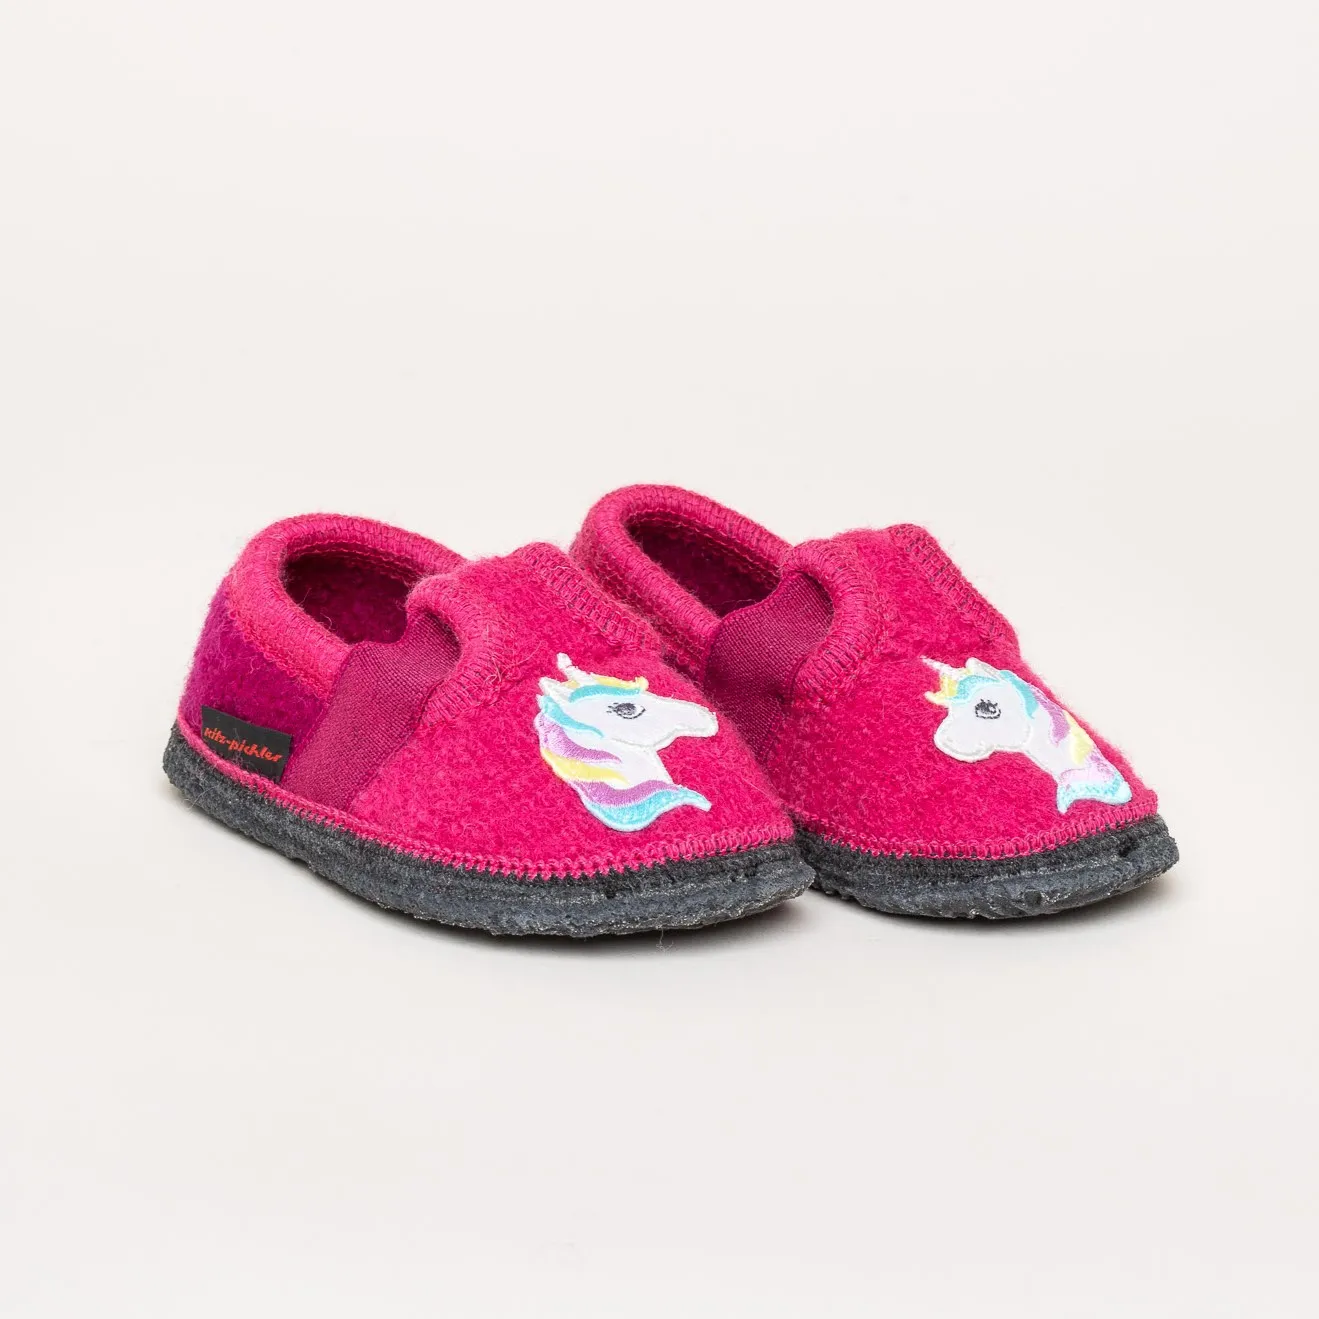 Bobby Unicorn Children's slipper